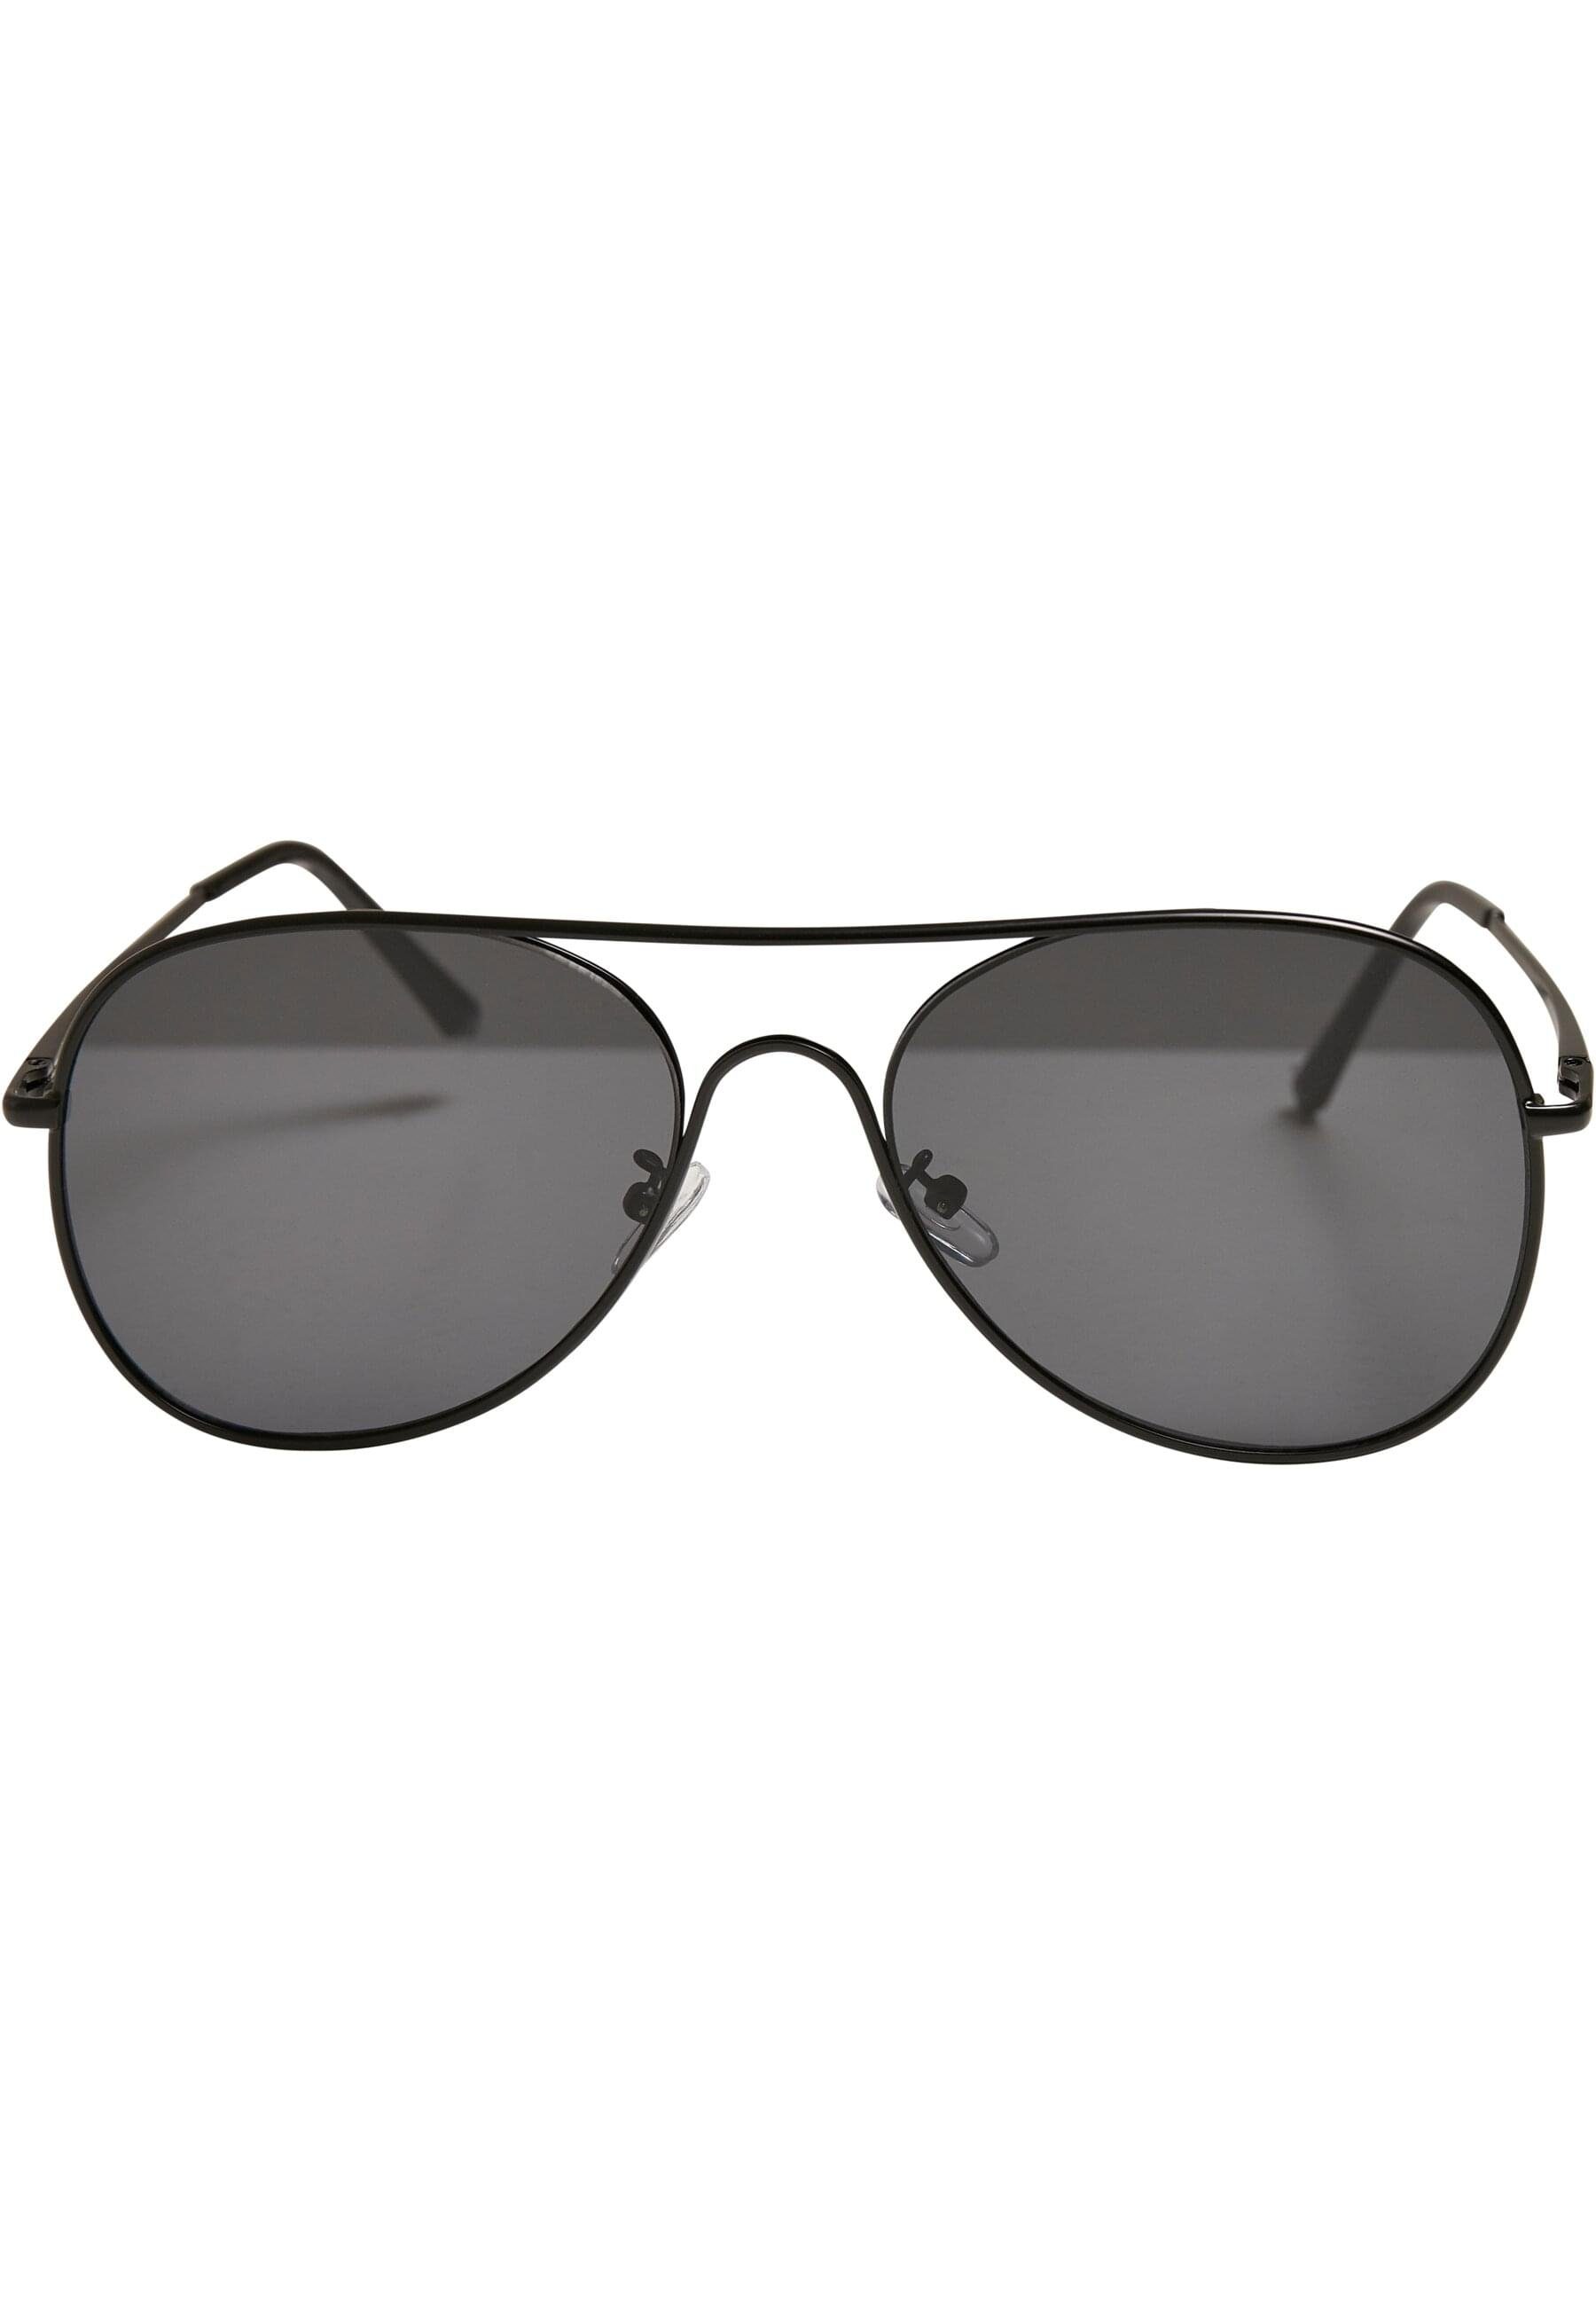 black/black Texas Sonnenbrille URBAN Sunglasses CLASSICS Unisex